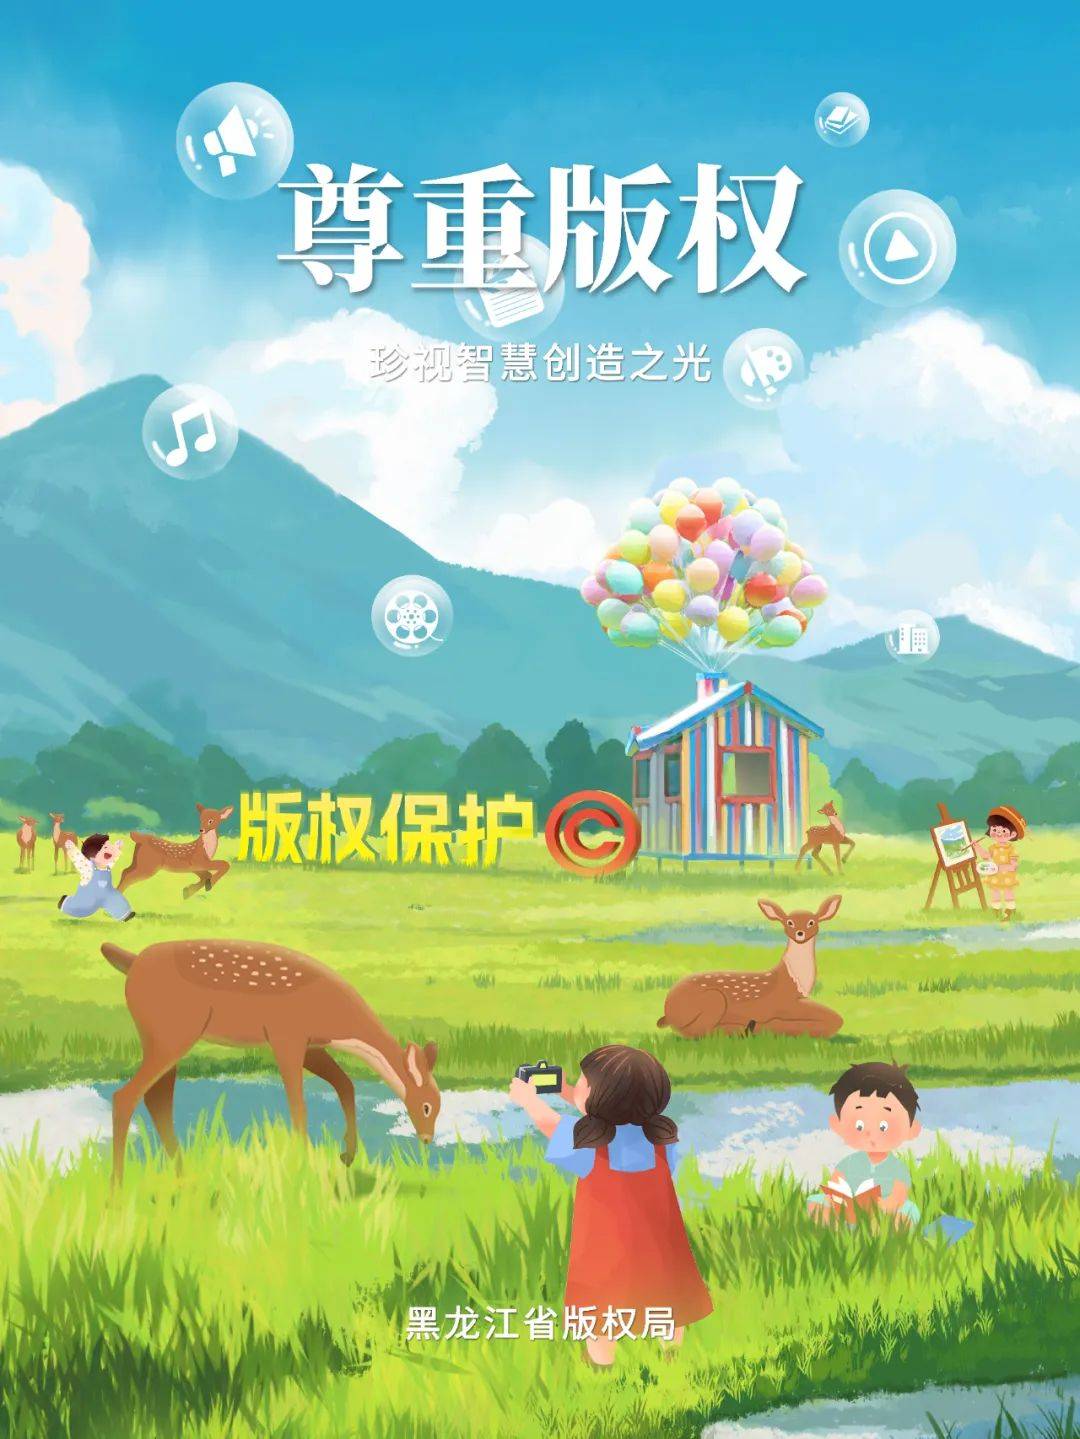 黑龙江省版权局发布2024年版权宣传活动公益海报和宣传短片